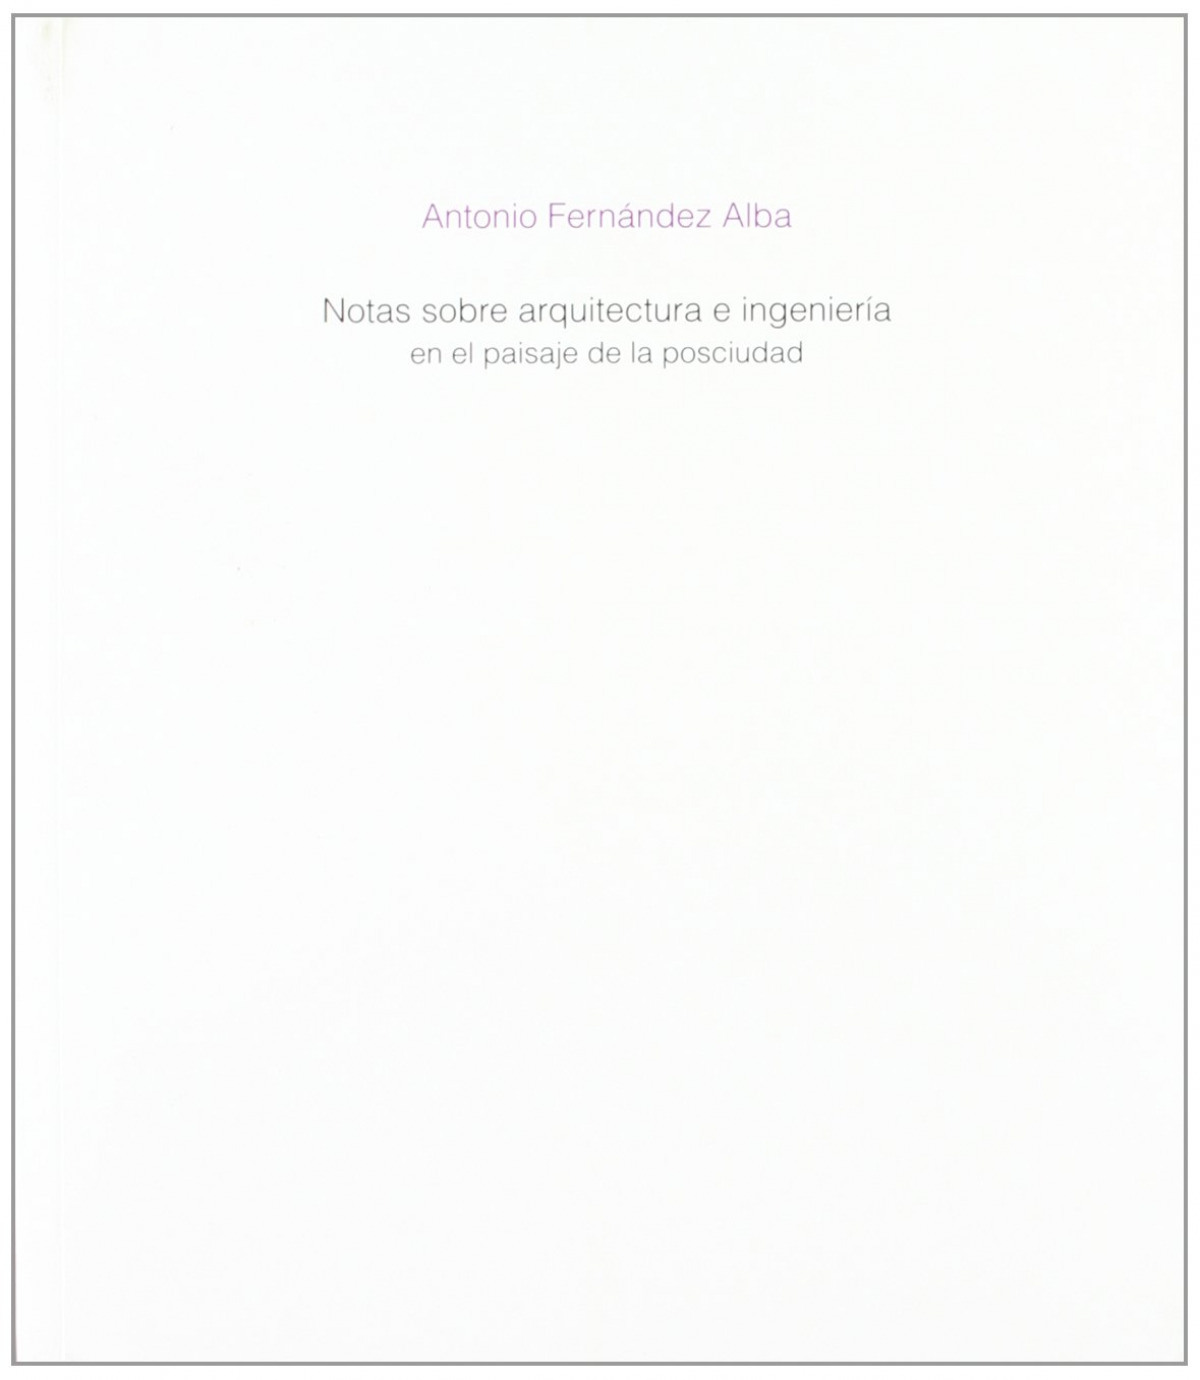 Notas sobre arquitectura e ingenieria en paisaje posciudad - Fernandez Alba, Antonio